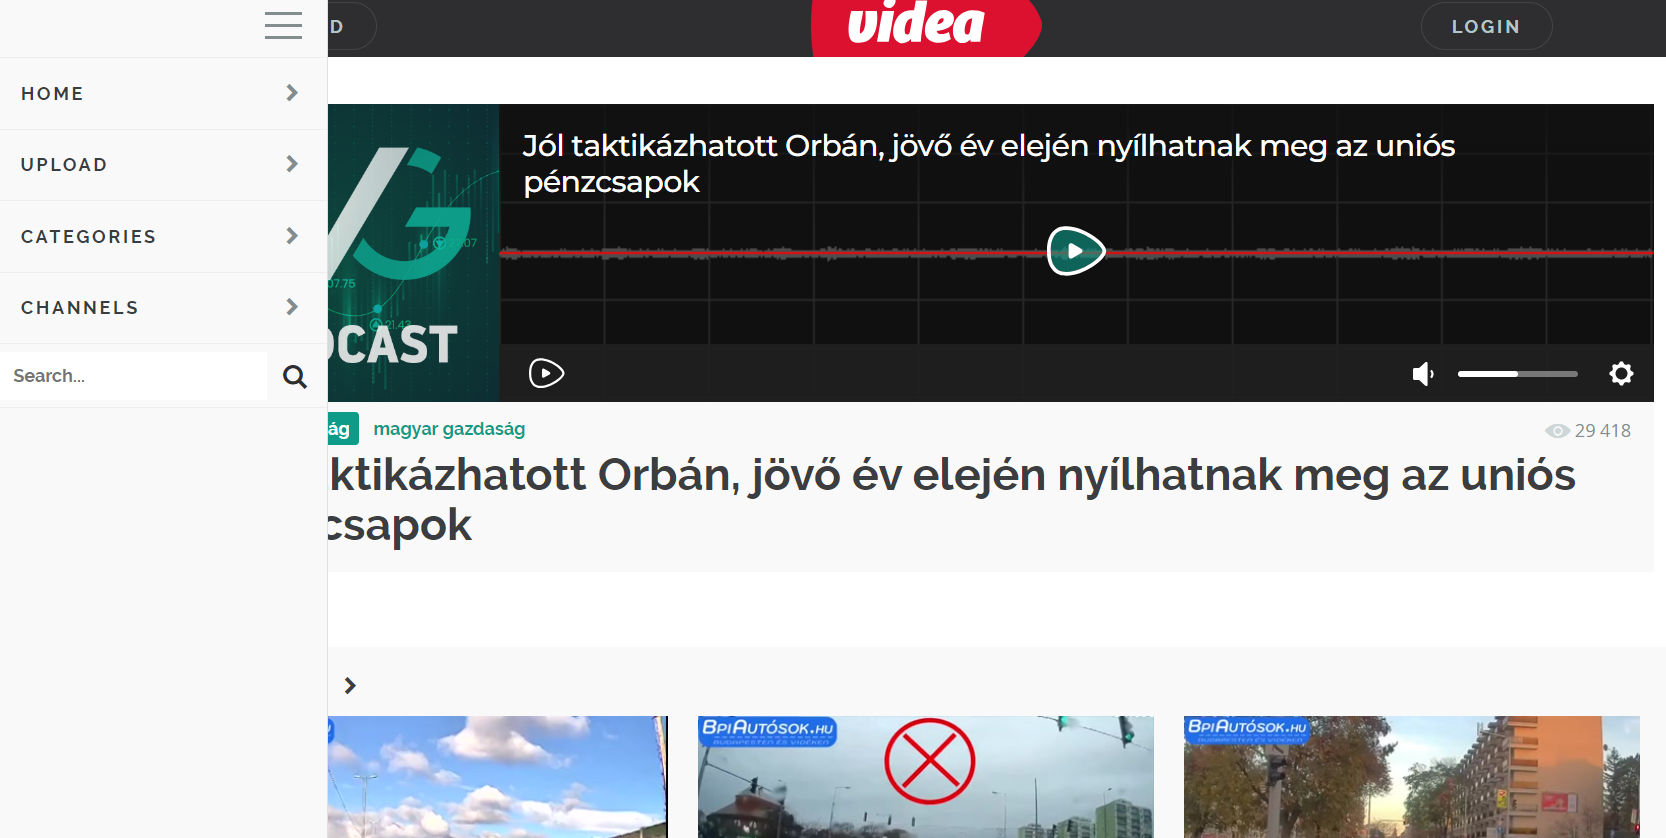 匈牙利免费视频平台可生成外链-青争开放社区